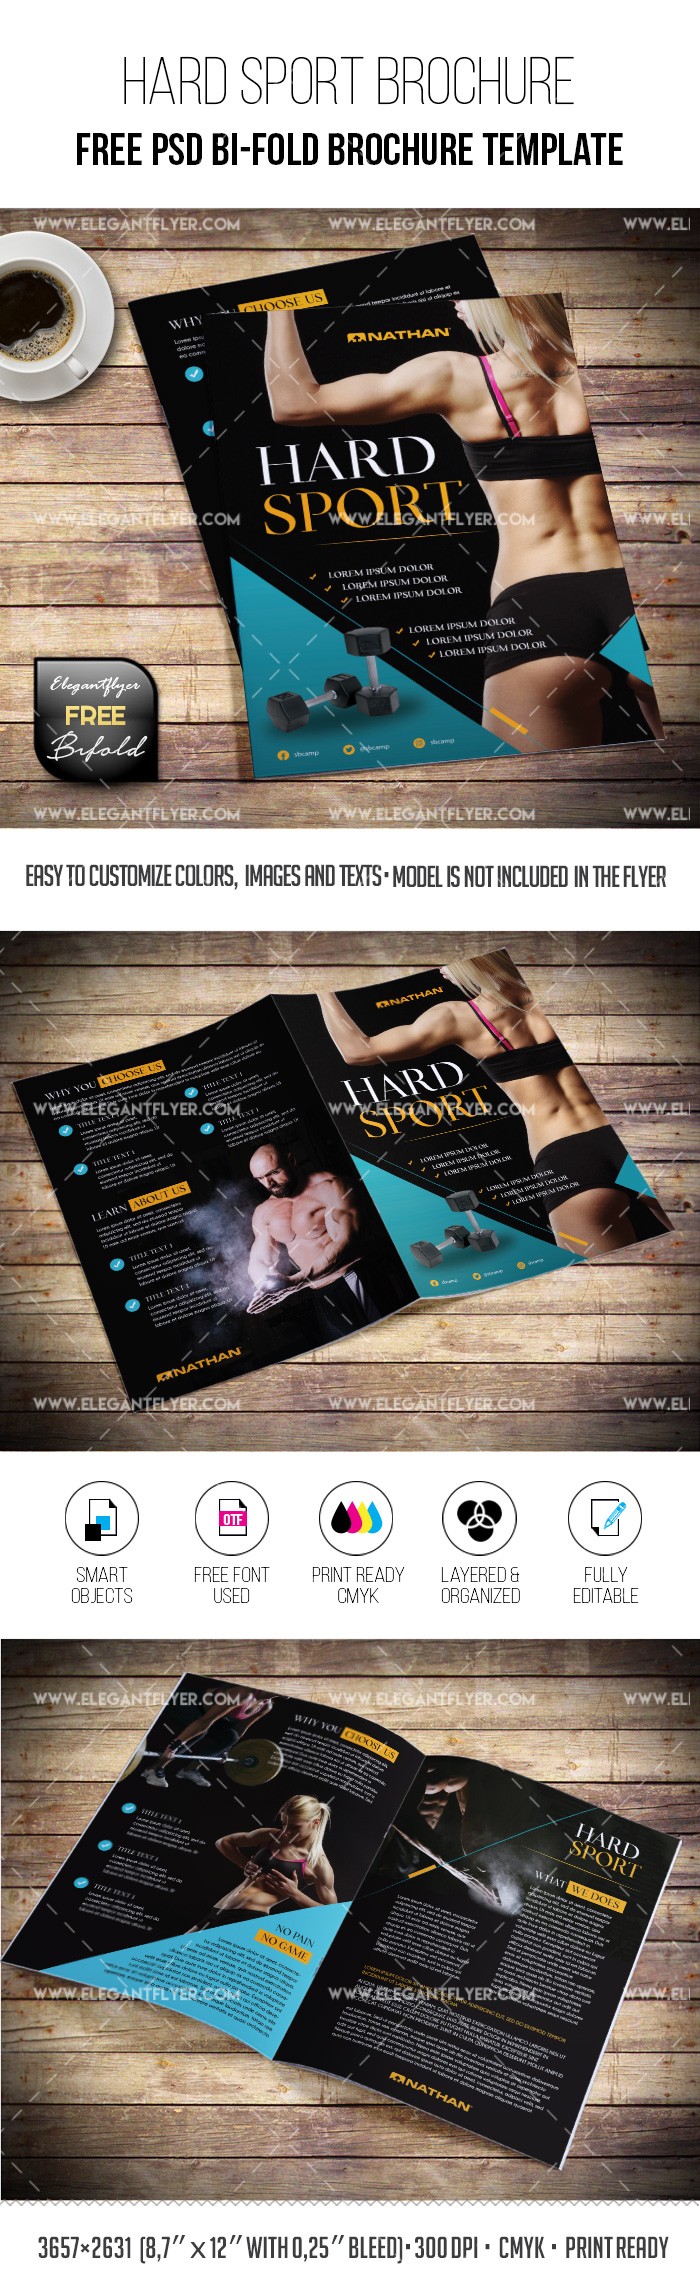 Hard Sport – Free Brochure PSD Template by ElegantFlyer